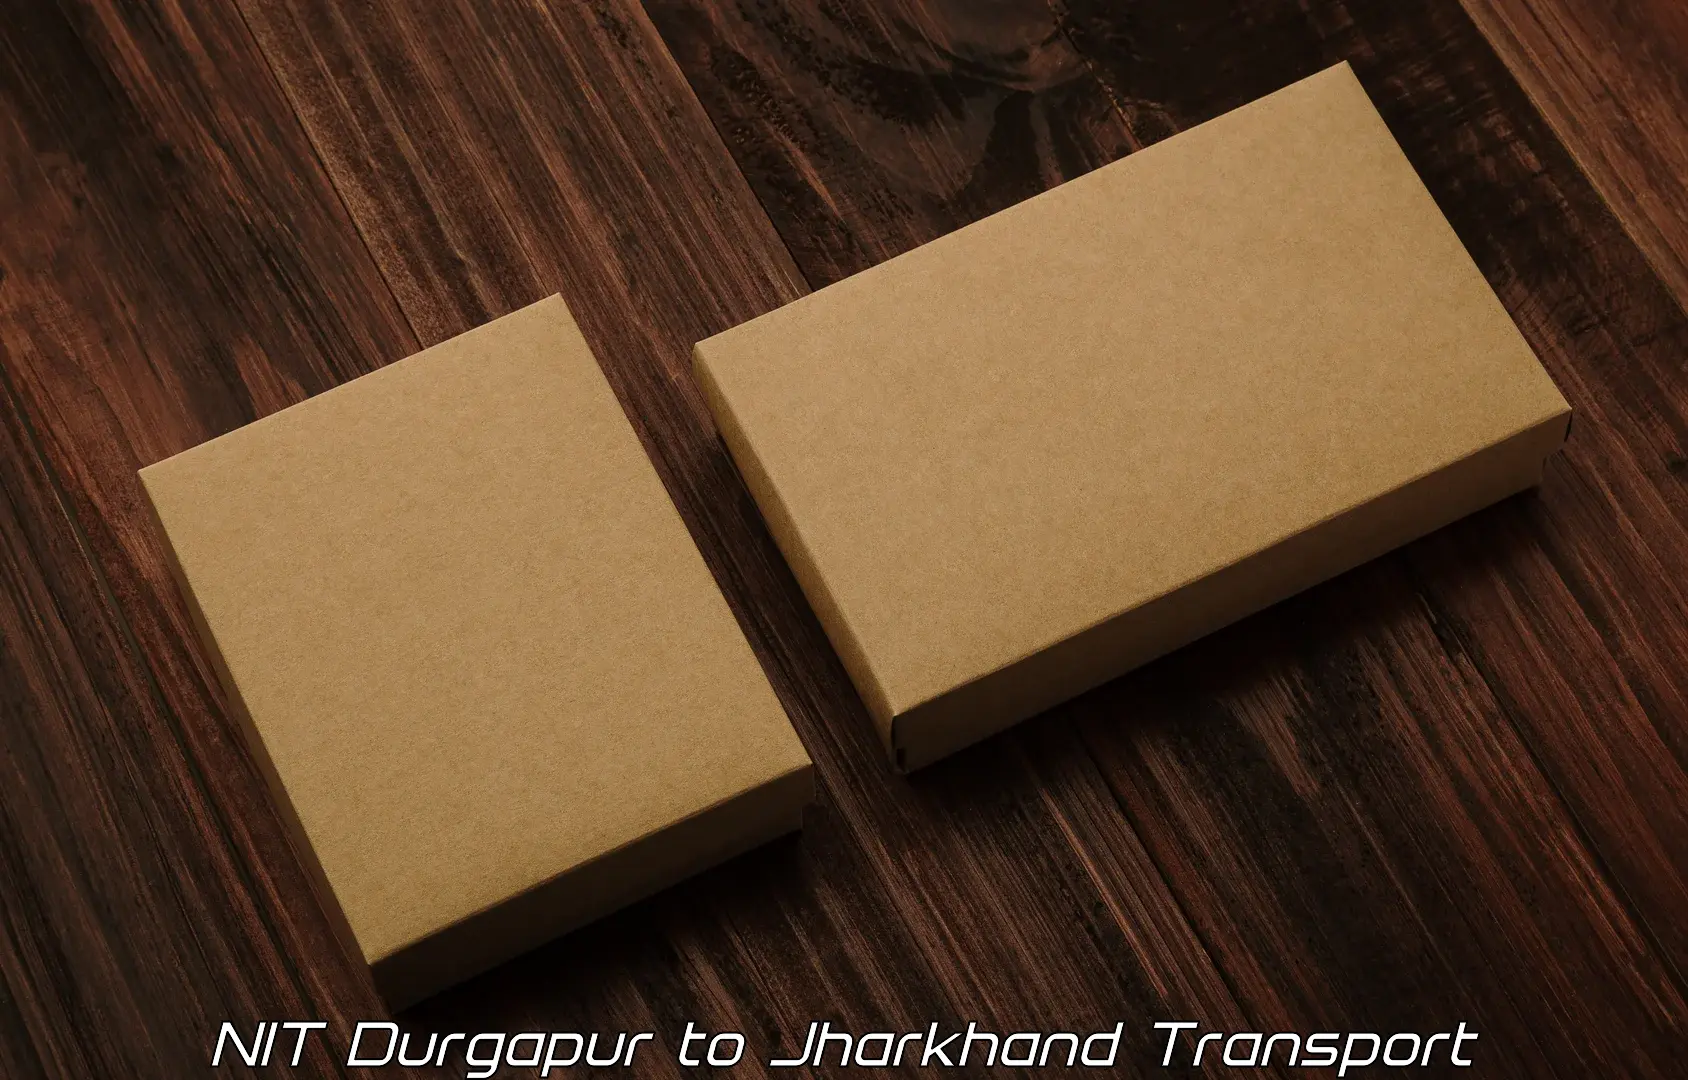 Vehicle transport services NIT Durgapur to Poreyahat